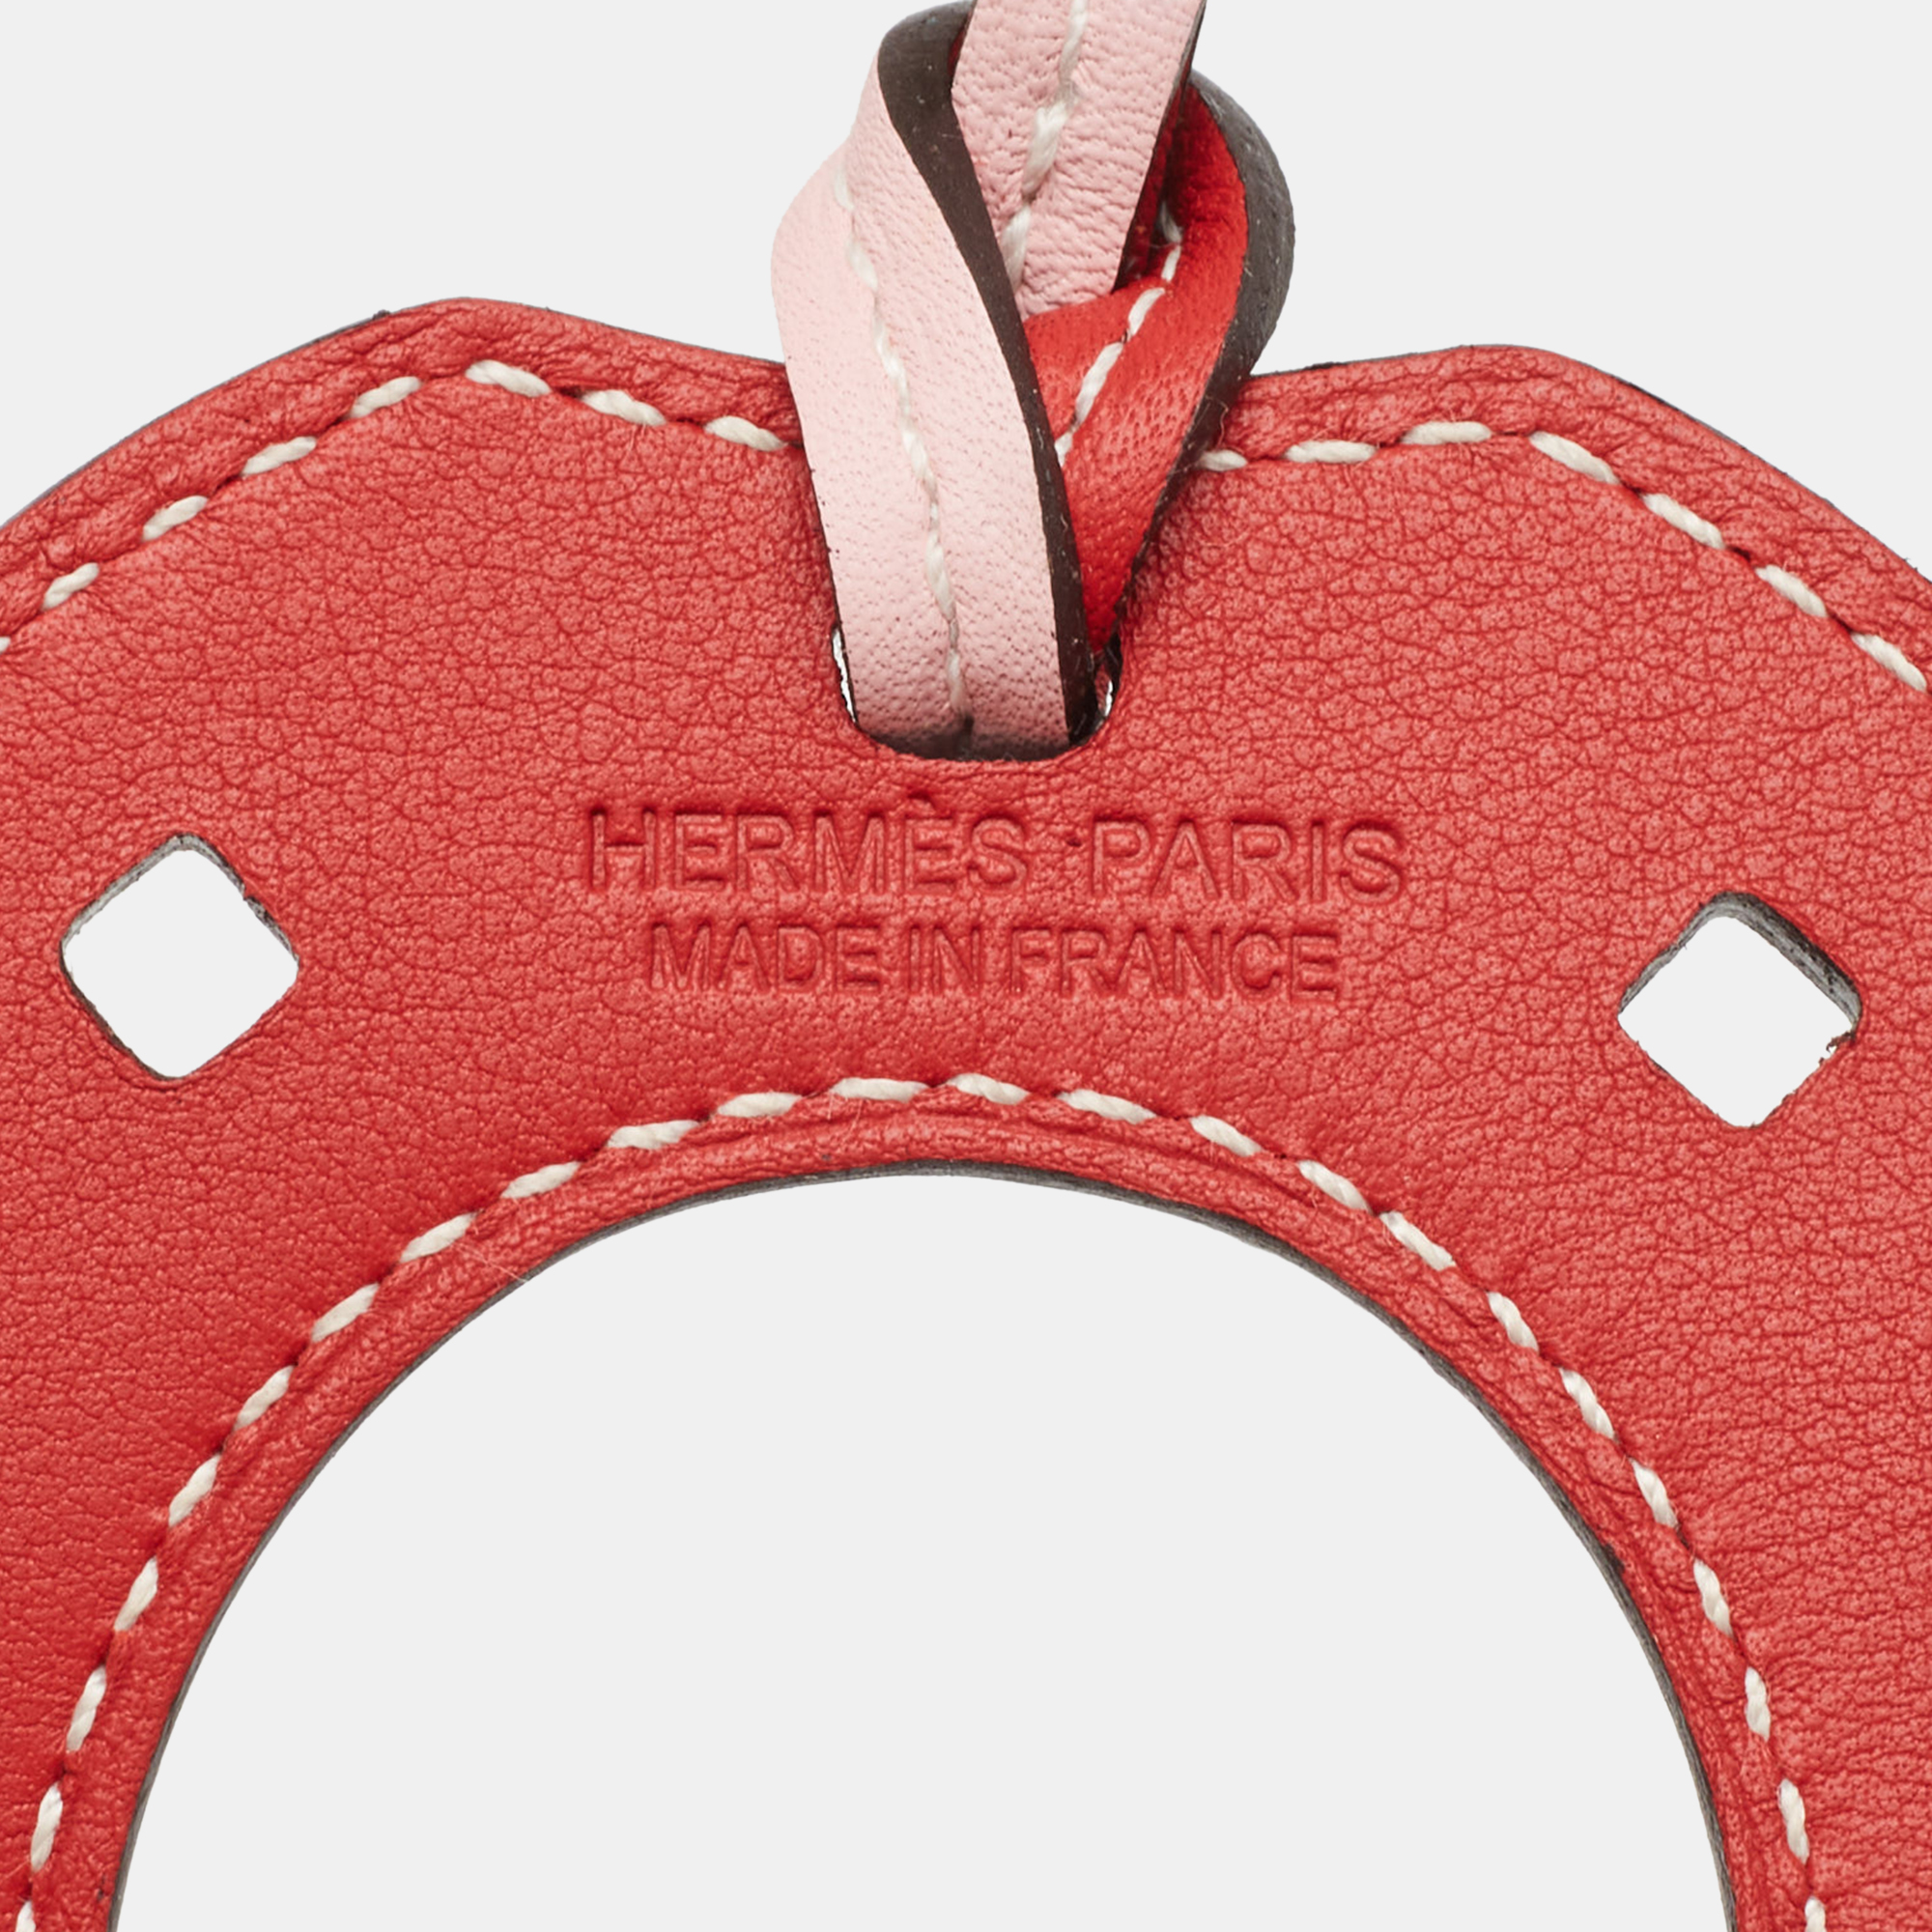 Hermes Rose Sakura/Vermillion Swift Leather Paddock Fer A Cheval Bag Charm